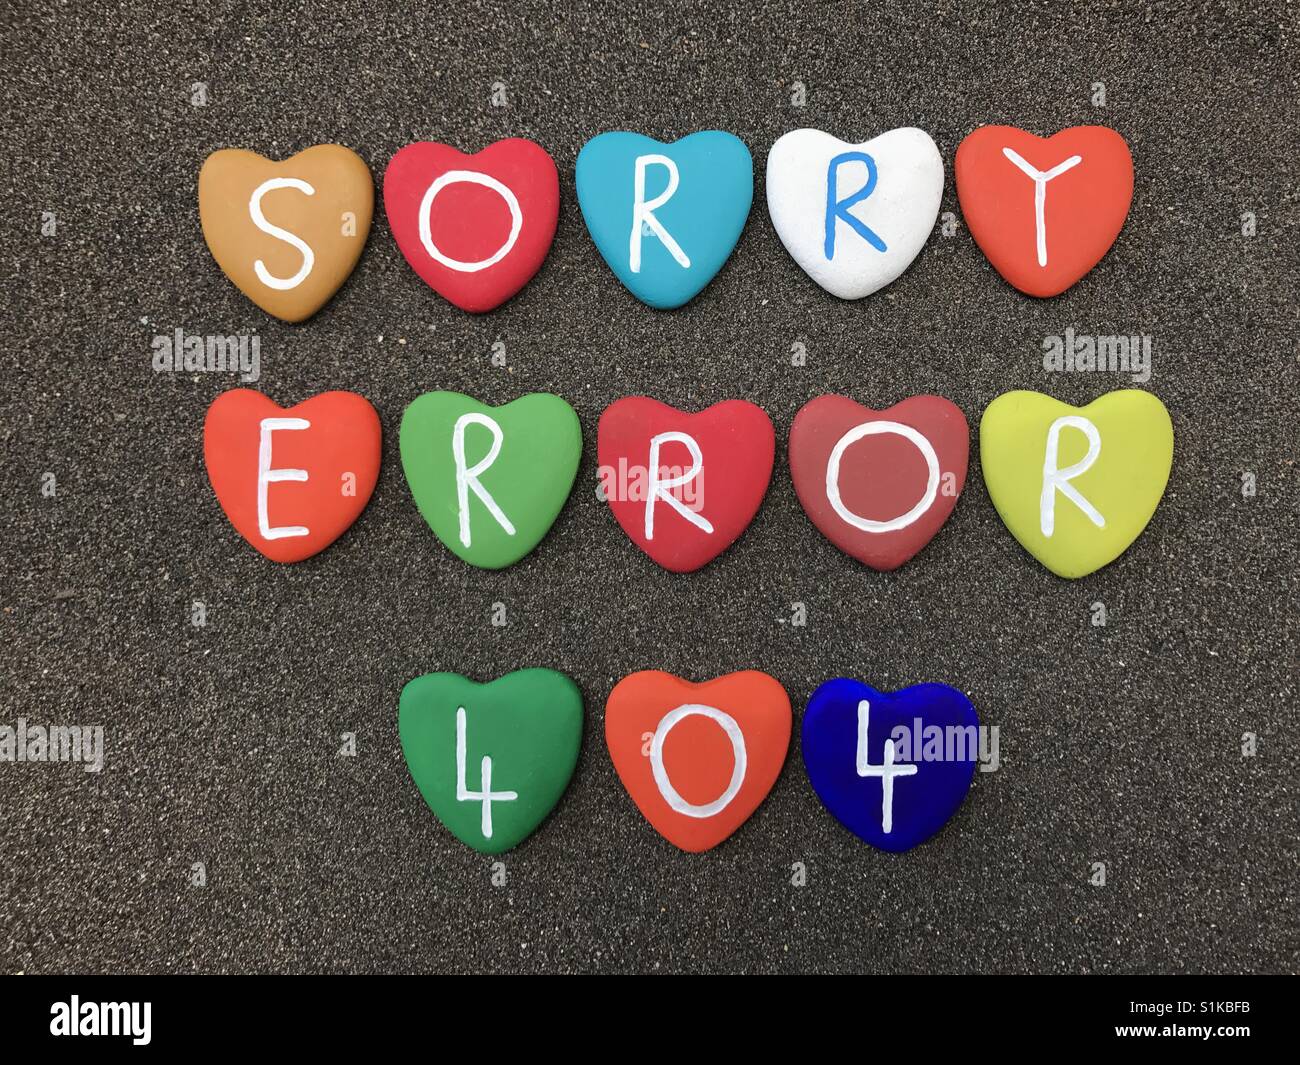 Sorry, Error 404 Stock Photo